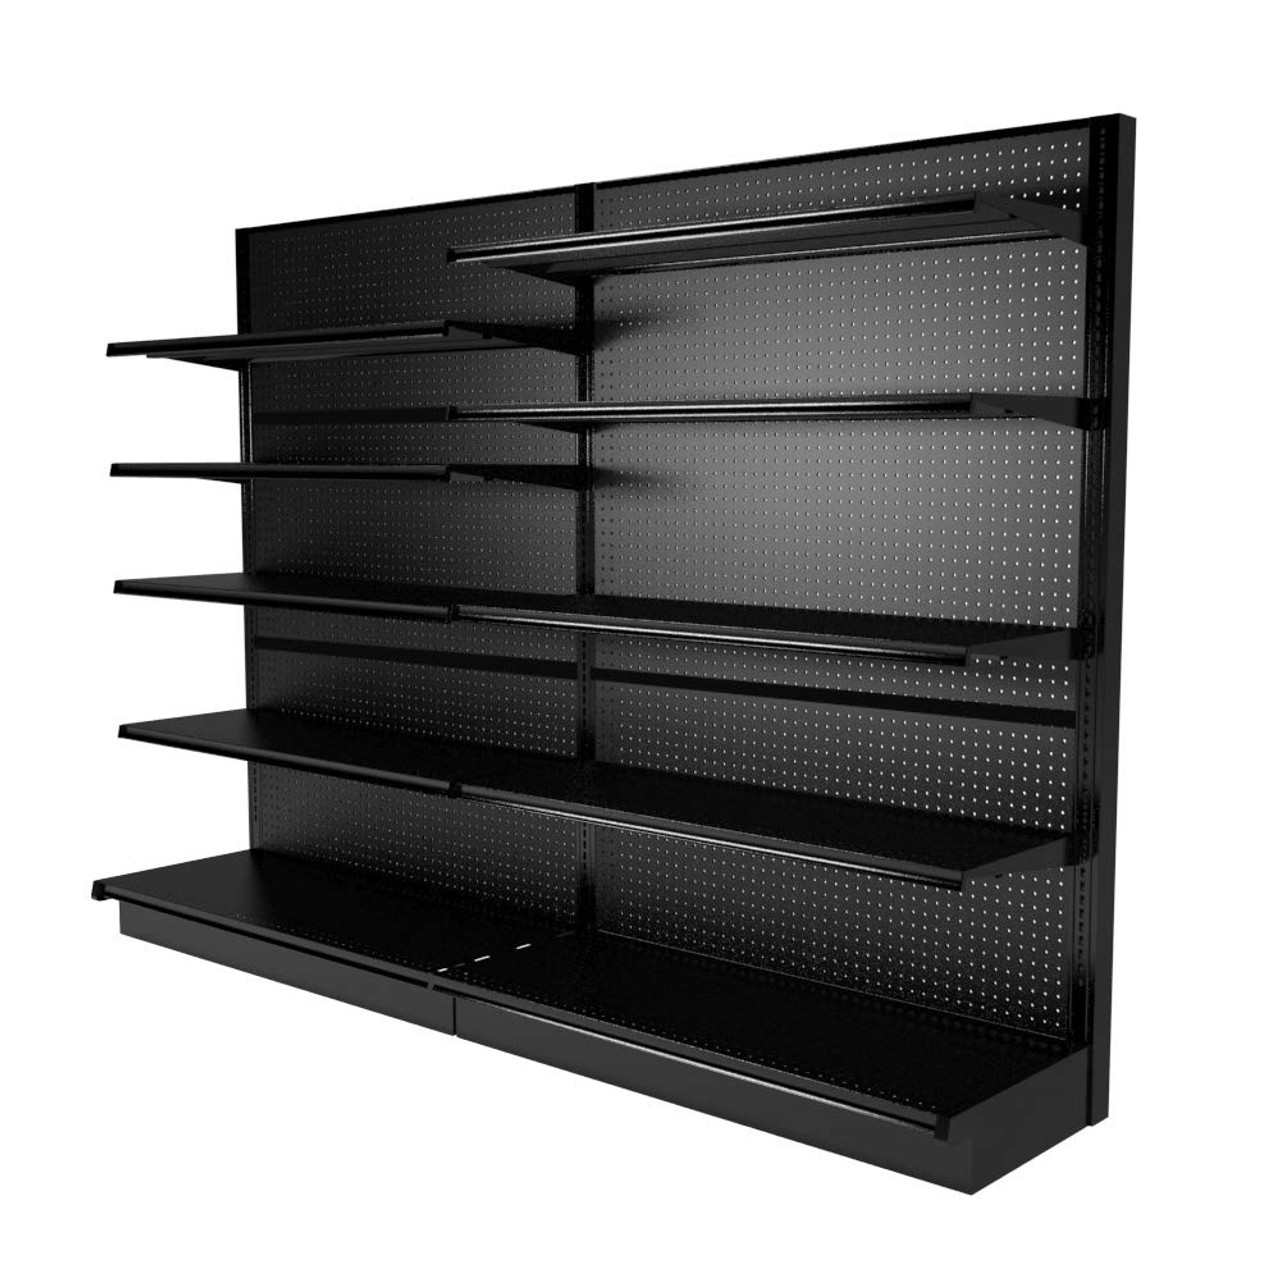 Ikea Black Shelves Online Website, Save 47% | jlcatj.gob.mx